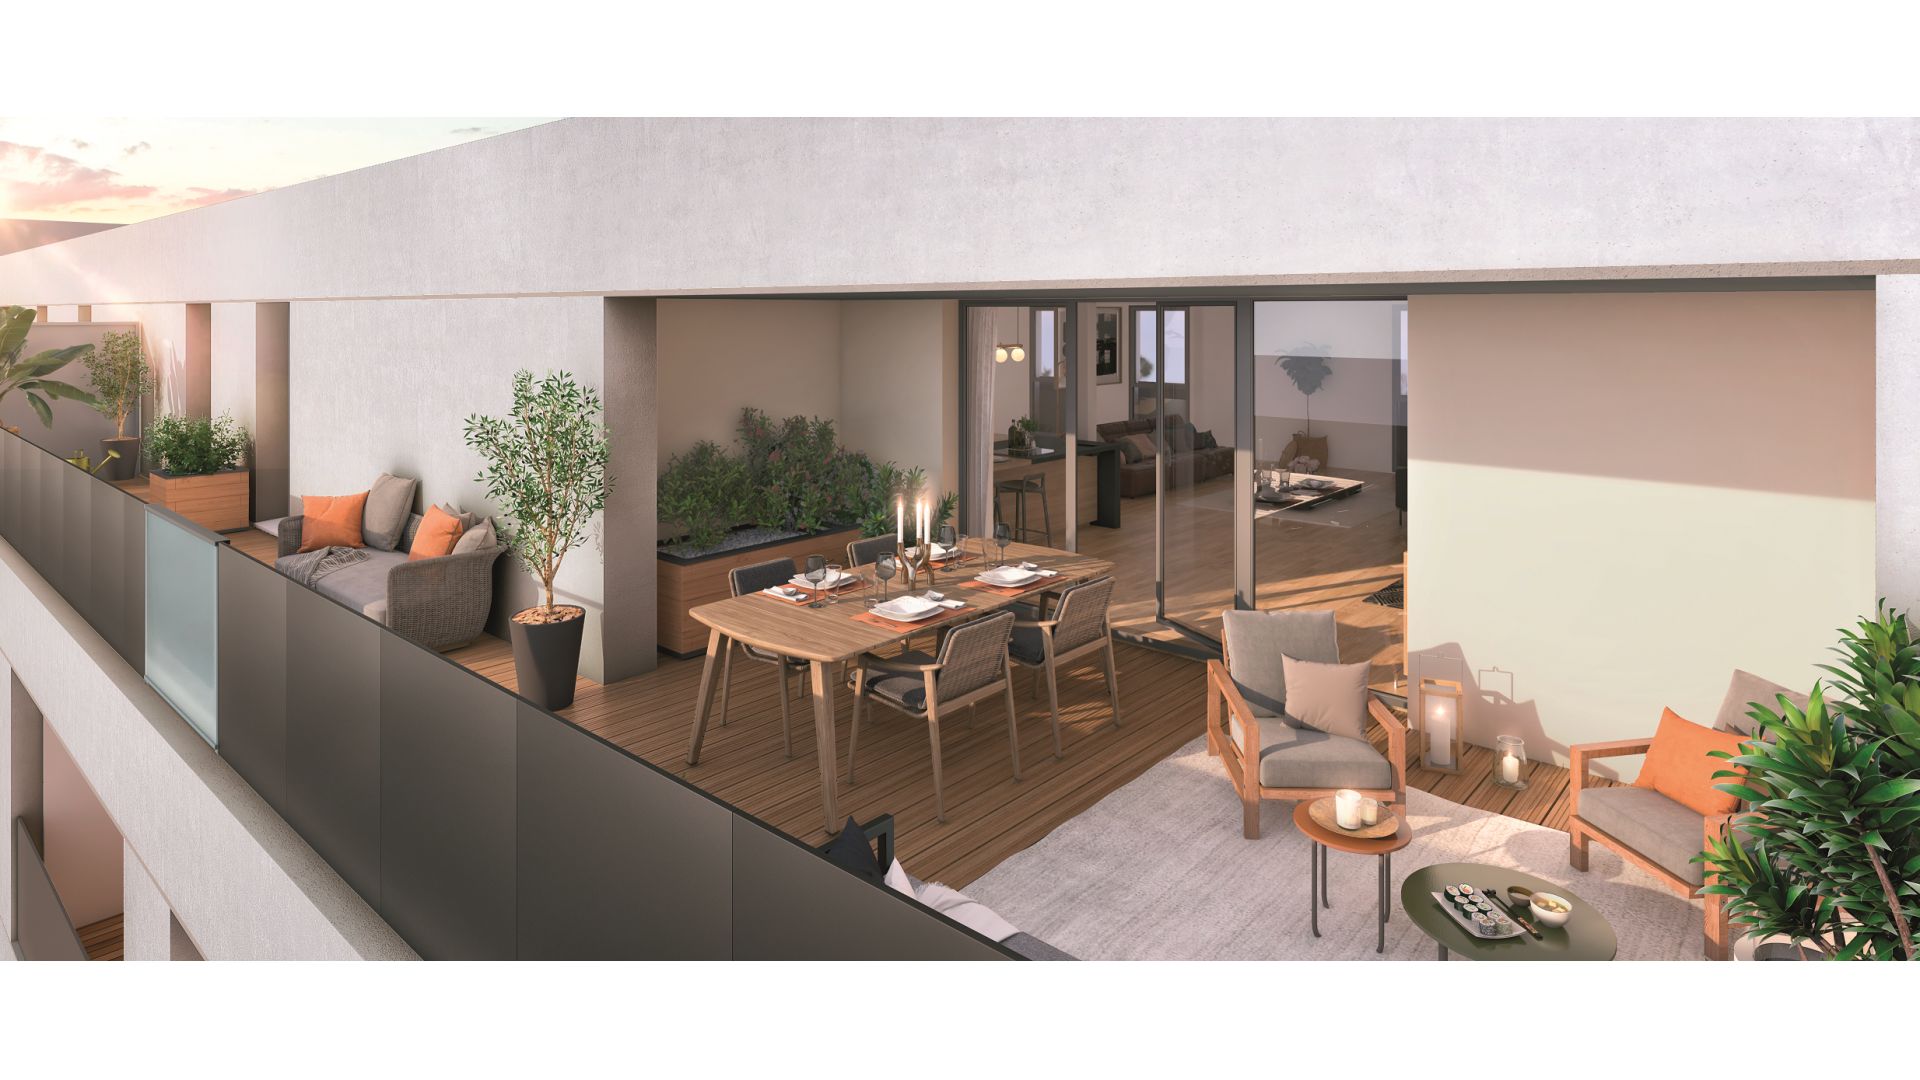 Greencity Immobilier - Résidence O Brienne - achat appartements neufs du T1 au T4 - Toulouse 31000 - vue terrasse